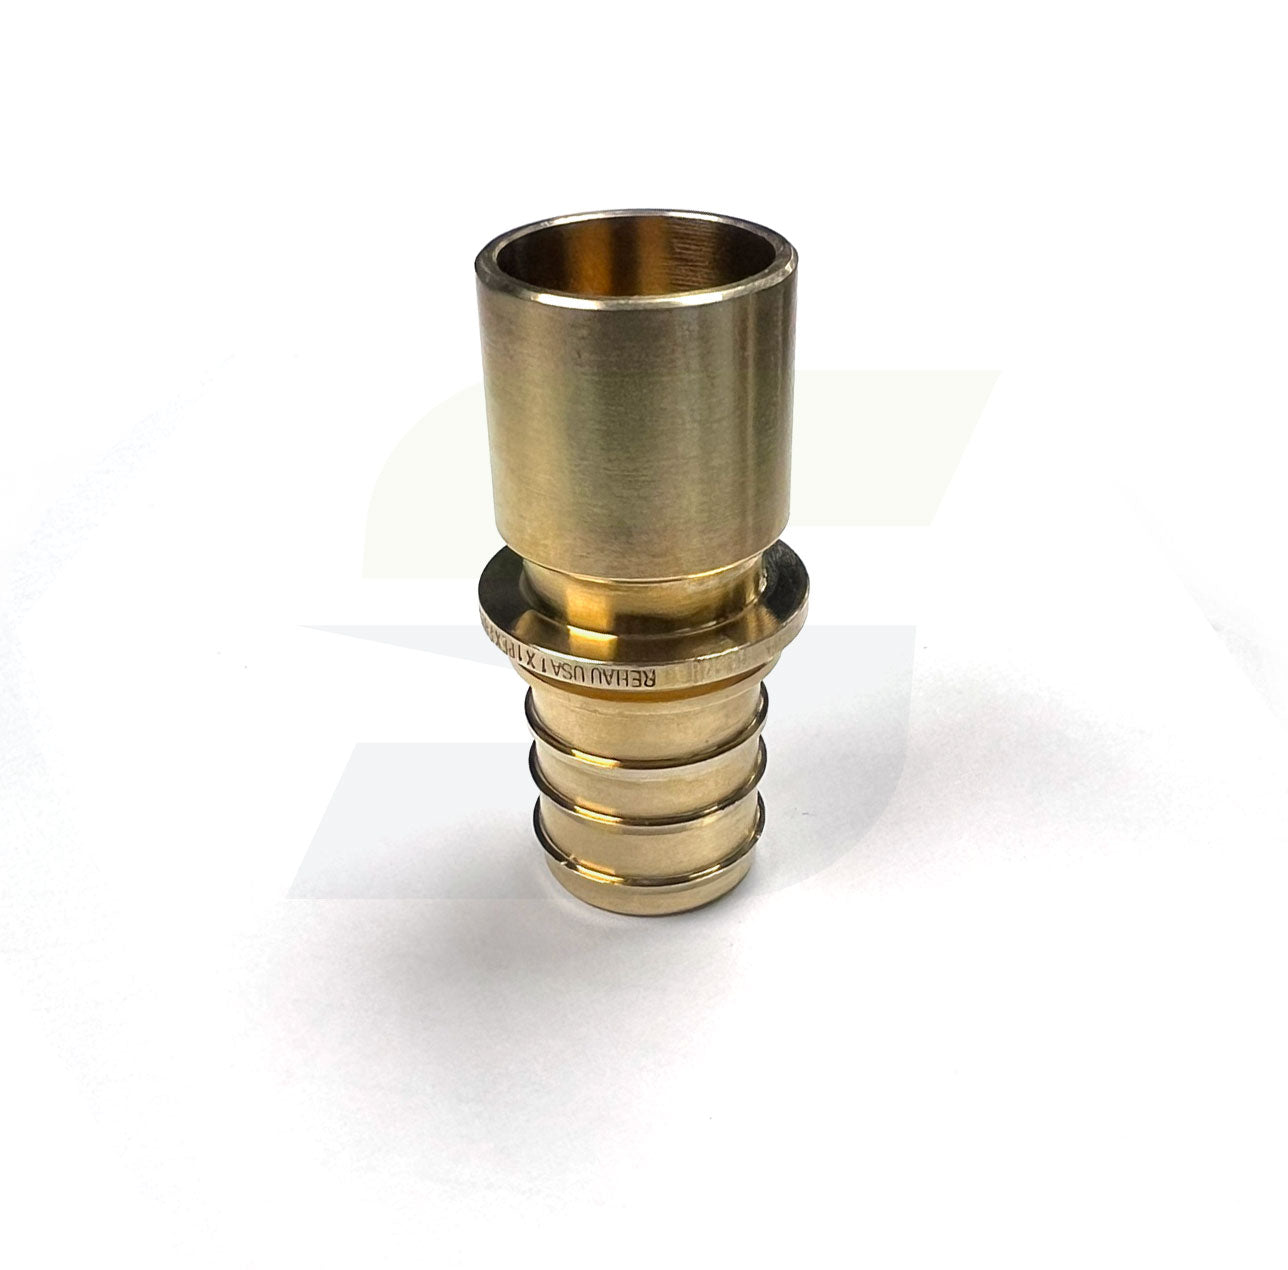 317186-001 - 3/4"x 3/4" C Male EVERLOC+ LF Brass Copper Adapter